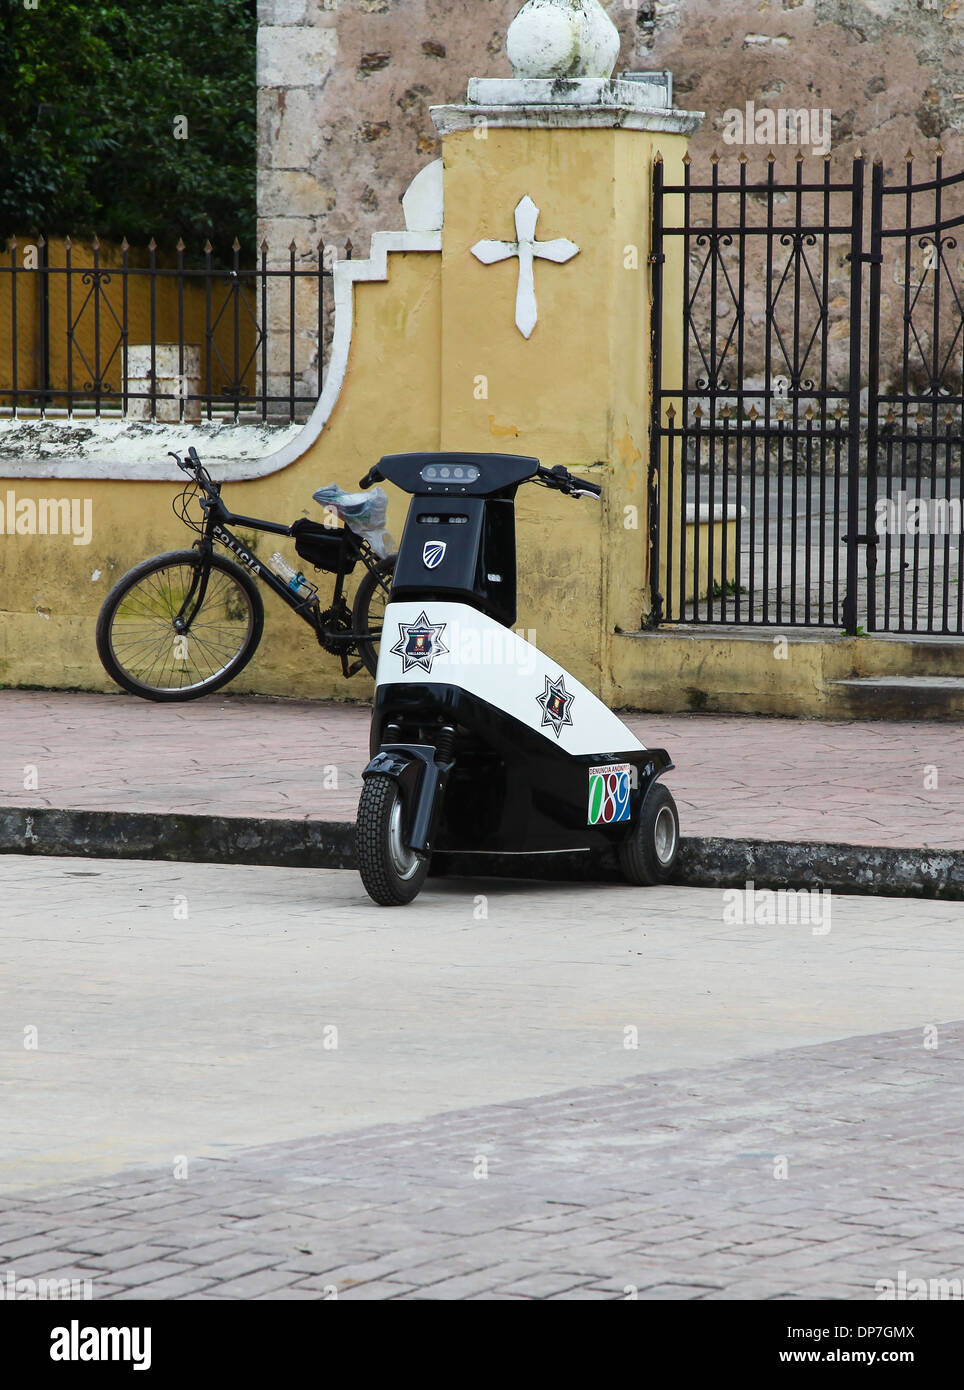 Une police à trois roues scooter dans la ville mexicaine de Valladolid au Mexique Banque D'Images